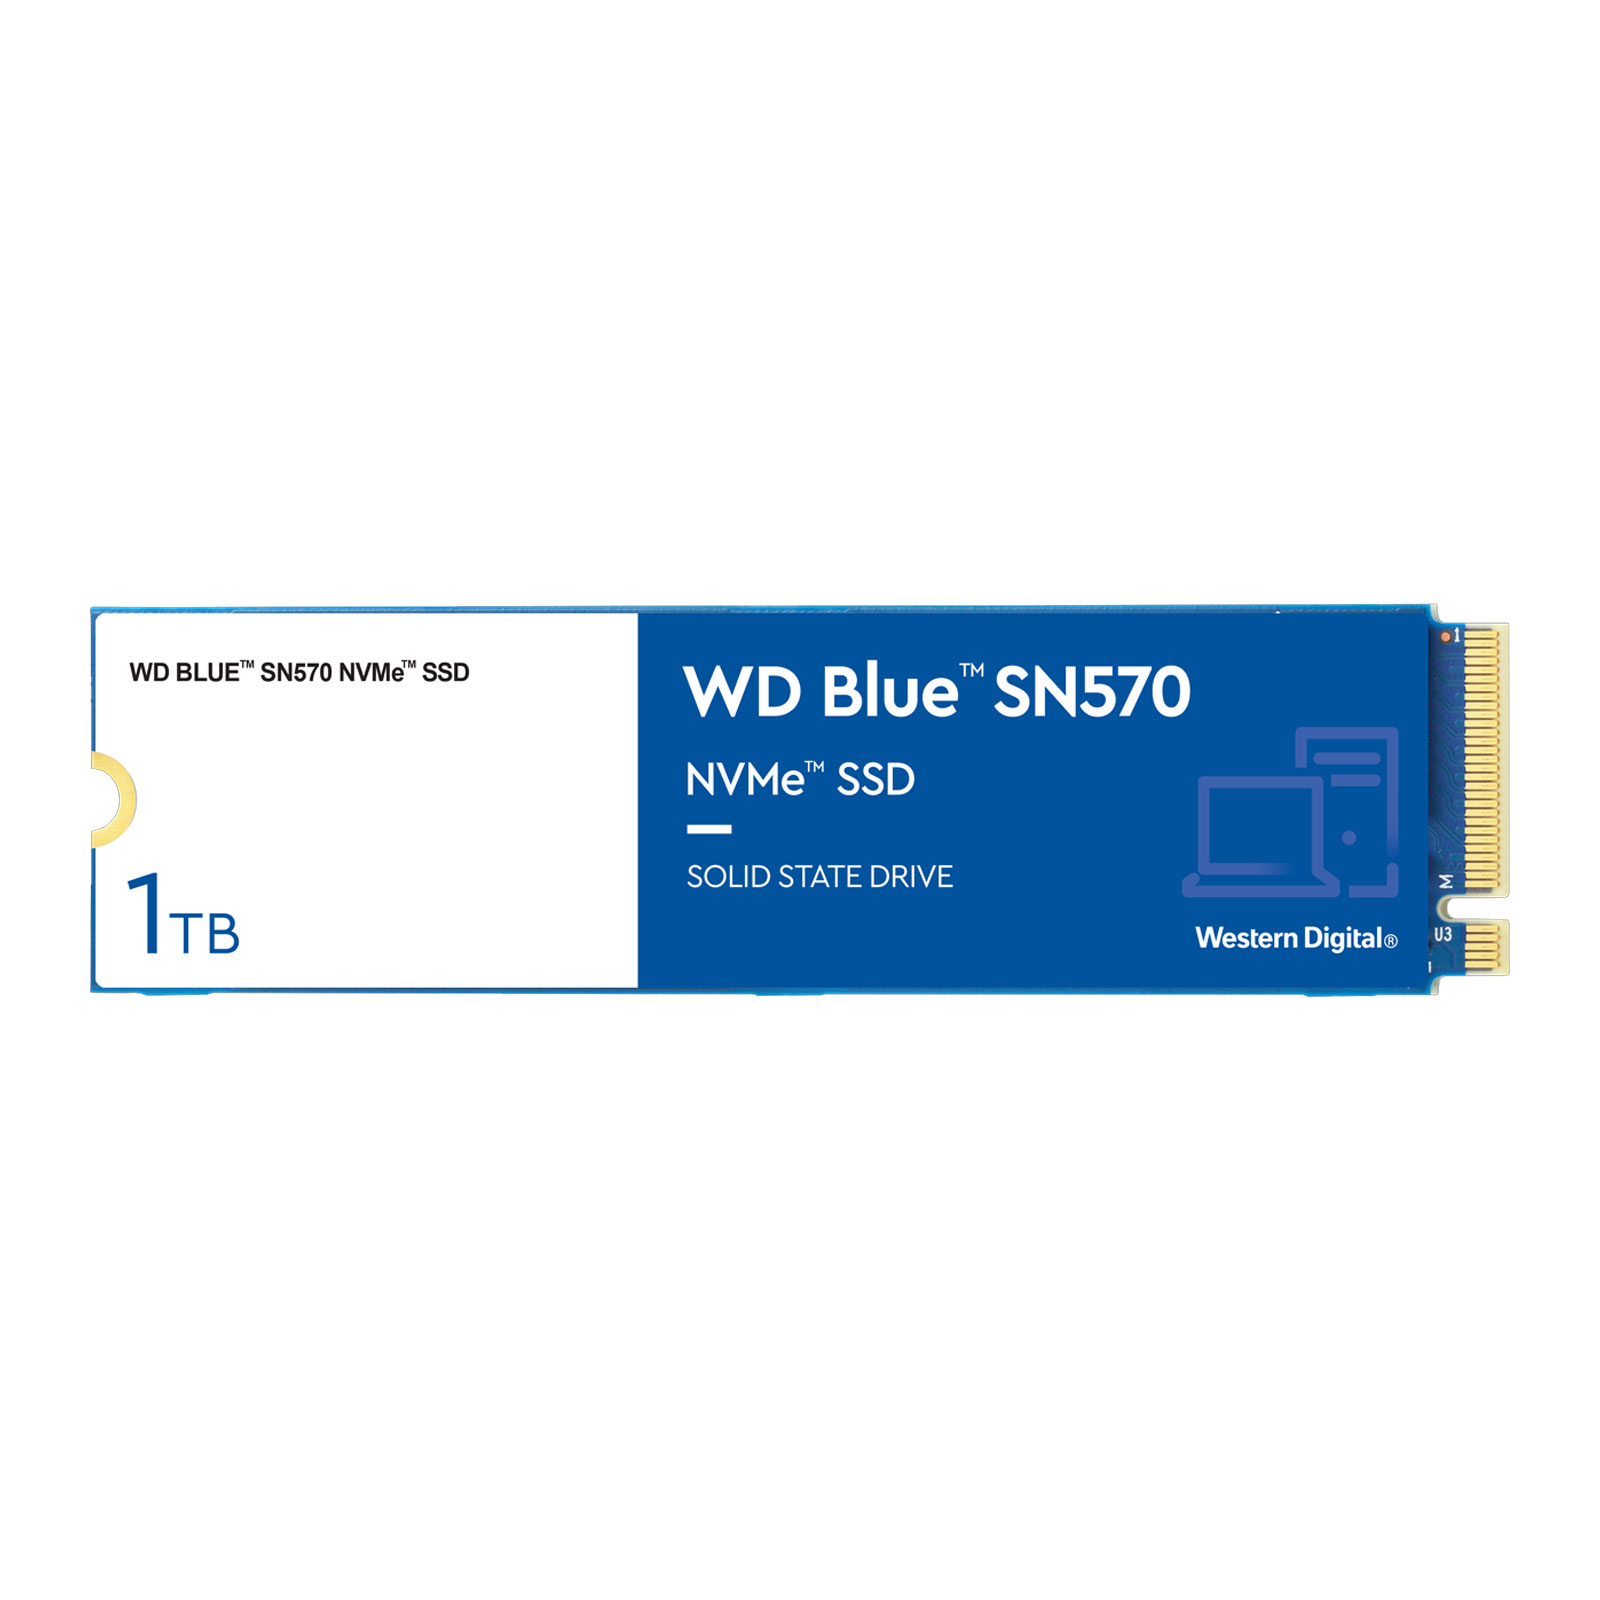 210043 SSD-Festplatte "WD_BLUE